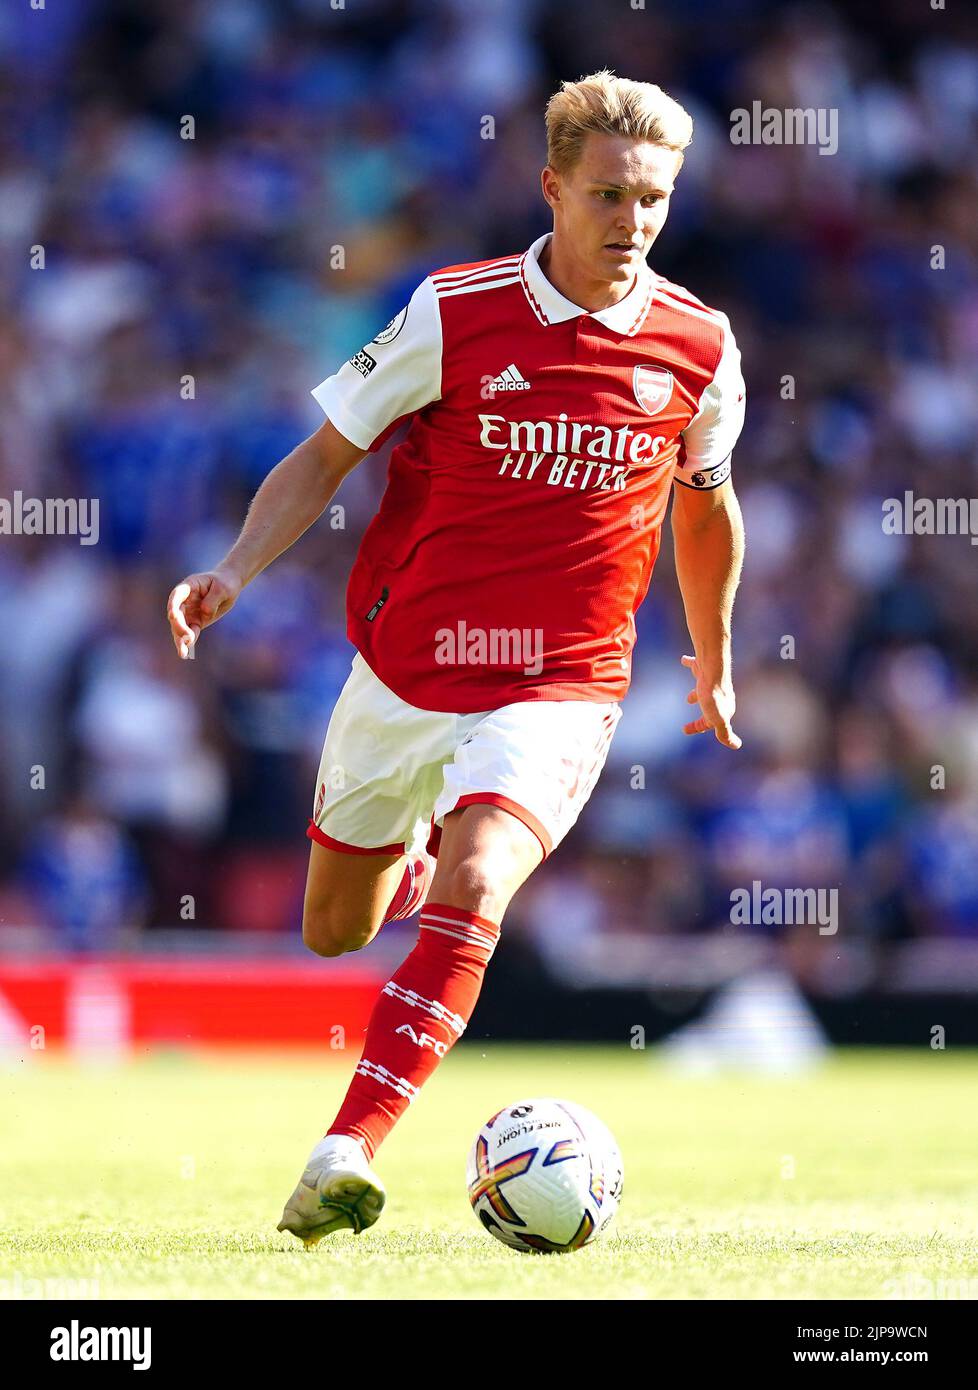 Martin Odegaard, del Arsenal, en acción durante el partido de la Premier League en el Emirates Stadium de Londres. Fecha de la foto: Sábado 13 de agosto de 2022. Foto de stock